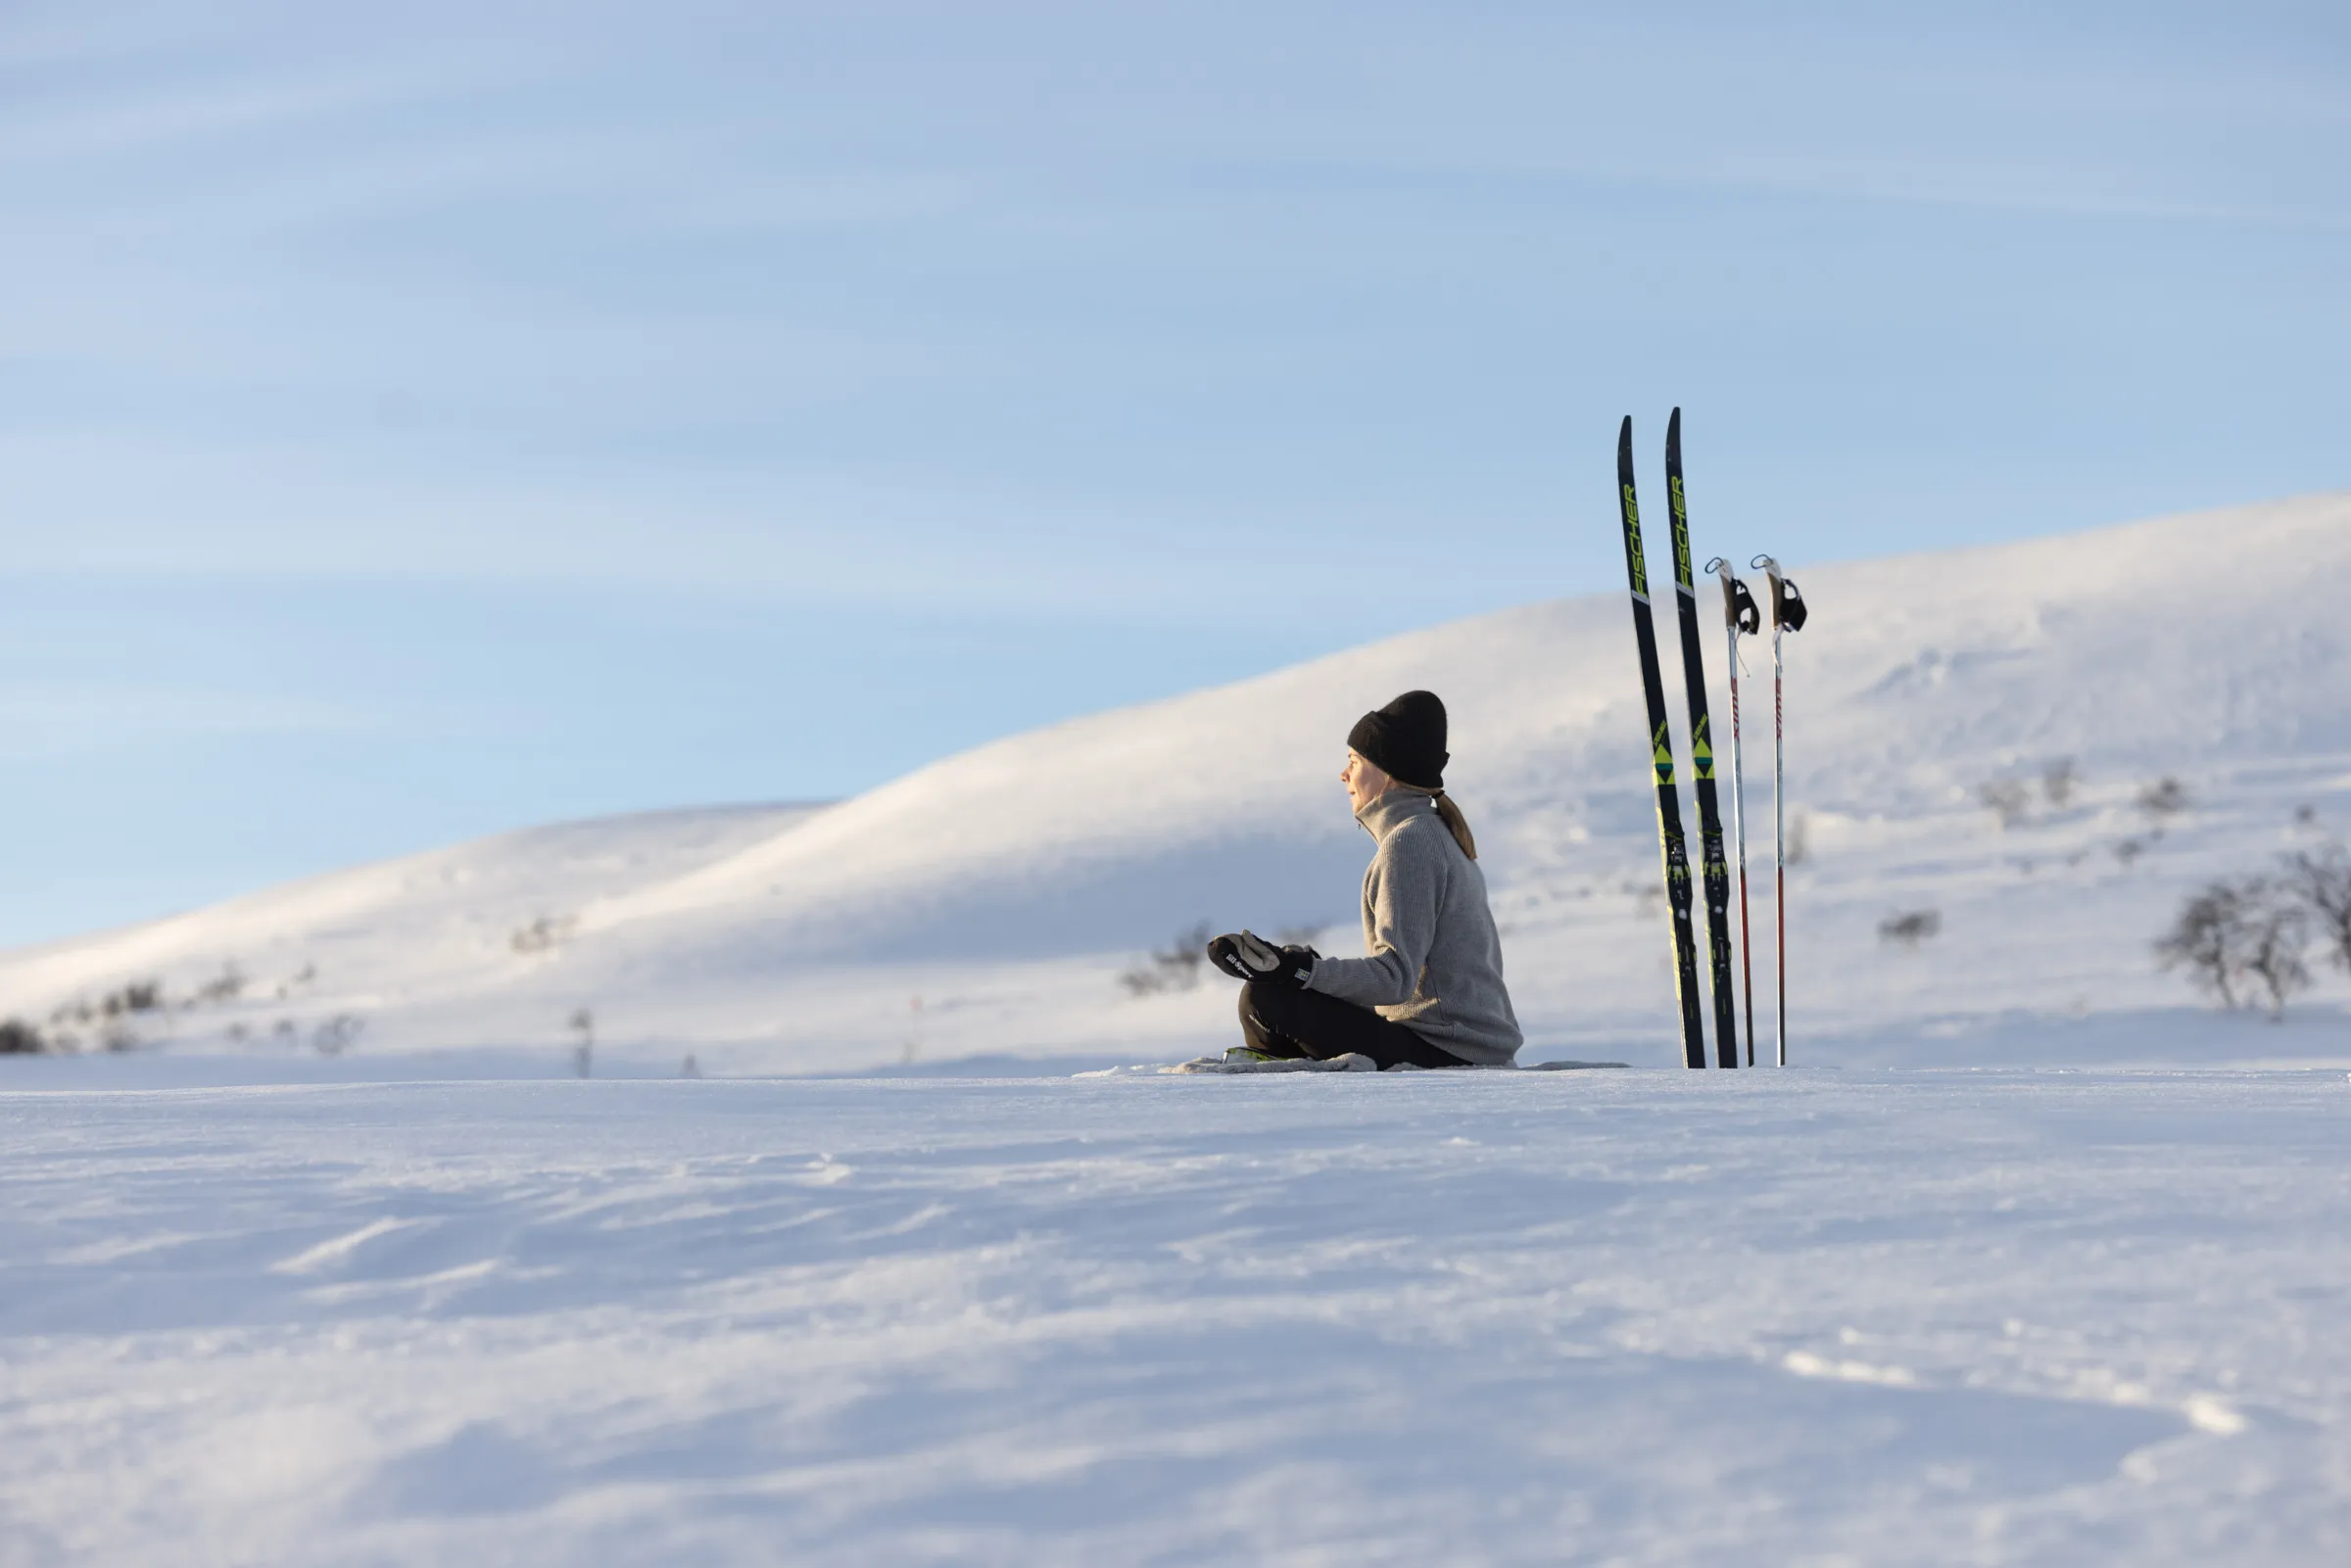 Kvinna sitter i yogaställning i snön, med längdskidor bredvid sig.